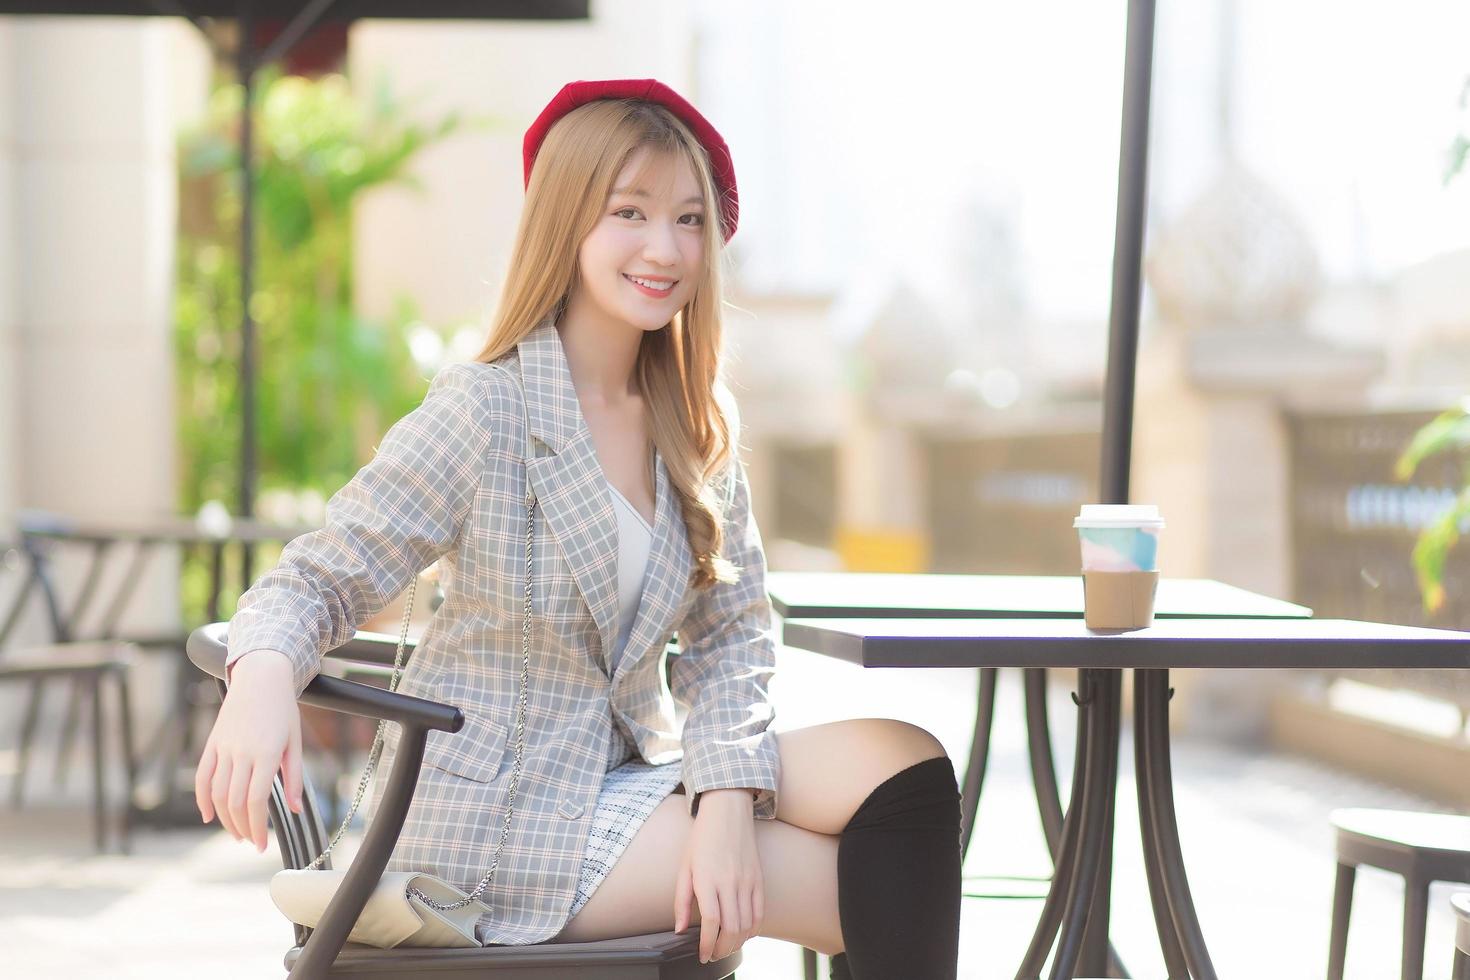 jovem mulher bonita asiática que usa terno e boné vermelho com cabelo bronze senta-se na cadeira no café ao ar livre enquanto havia uma caneca de café em cima da mesa em uma manhã ensolarada. foto